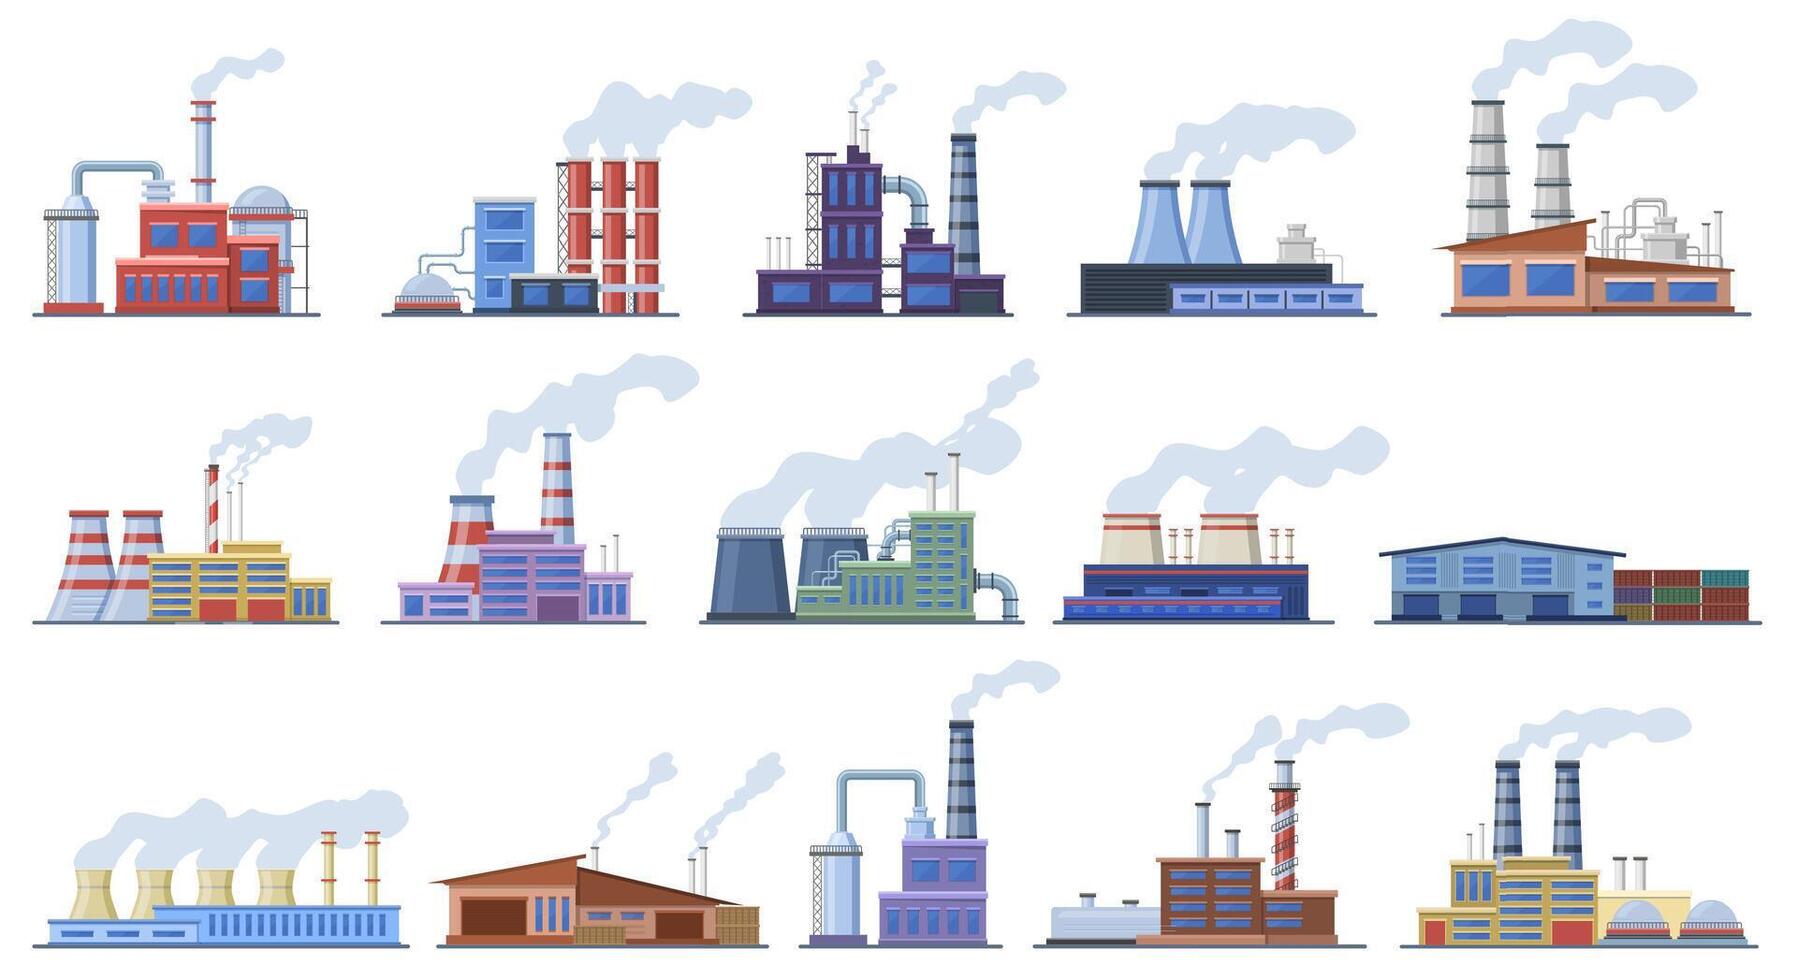 fabrik byggnader. industri lager och kraft station, tillverkning fabrik byggnad arkitektur exteriör vektor illustration ikoner uppsättning